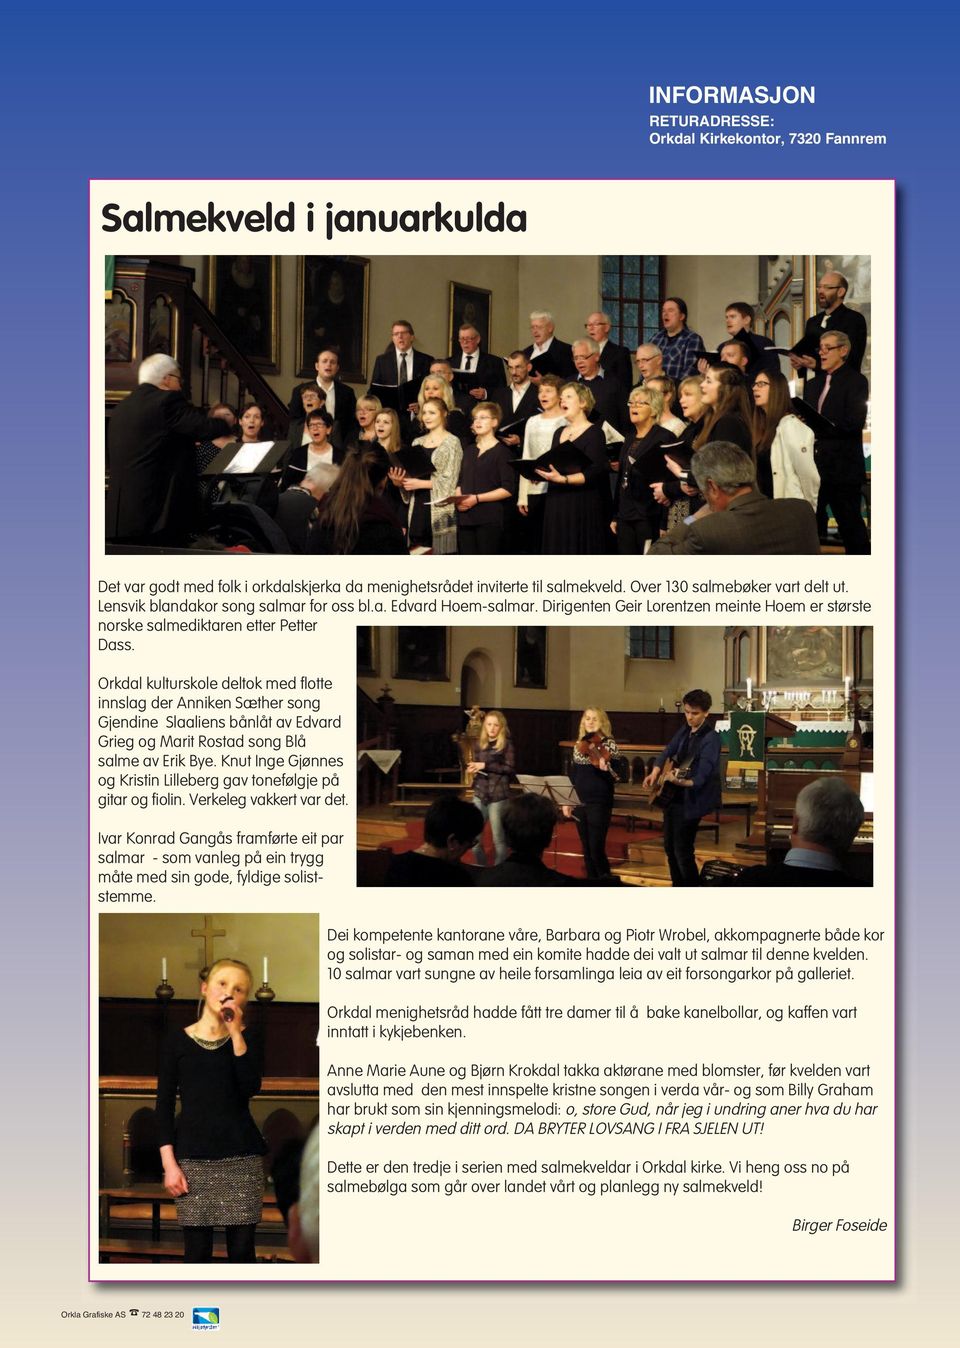 Orkdal kulturskole deltok med flotte innslag der Anniken Sæther song Gjendine Slaaliens bånlåt av Edvard Grieg og Marit Rostad song Blå salme av Erik Bye.